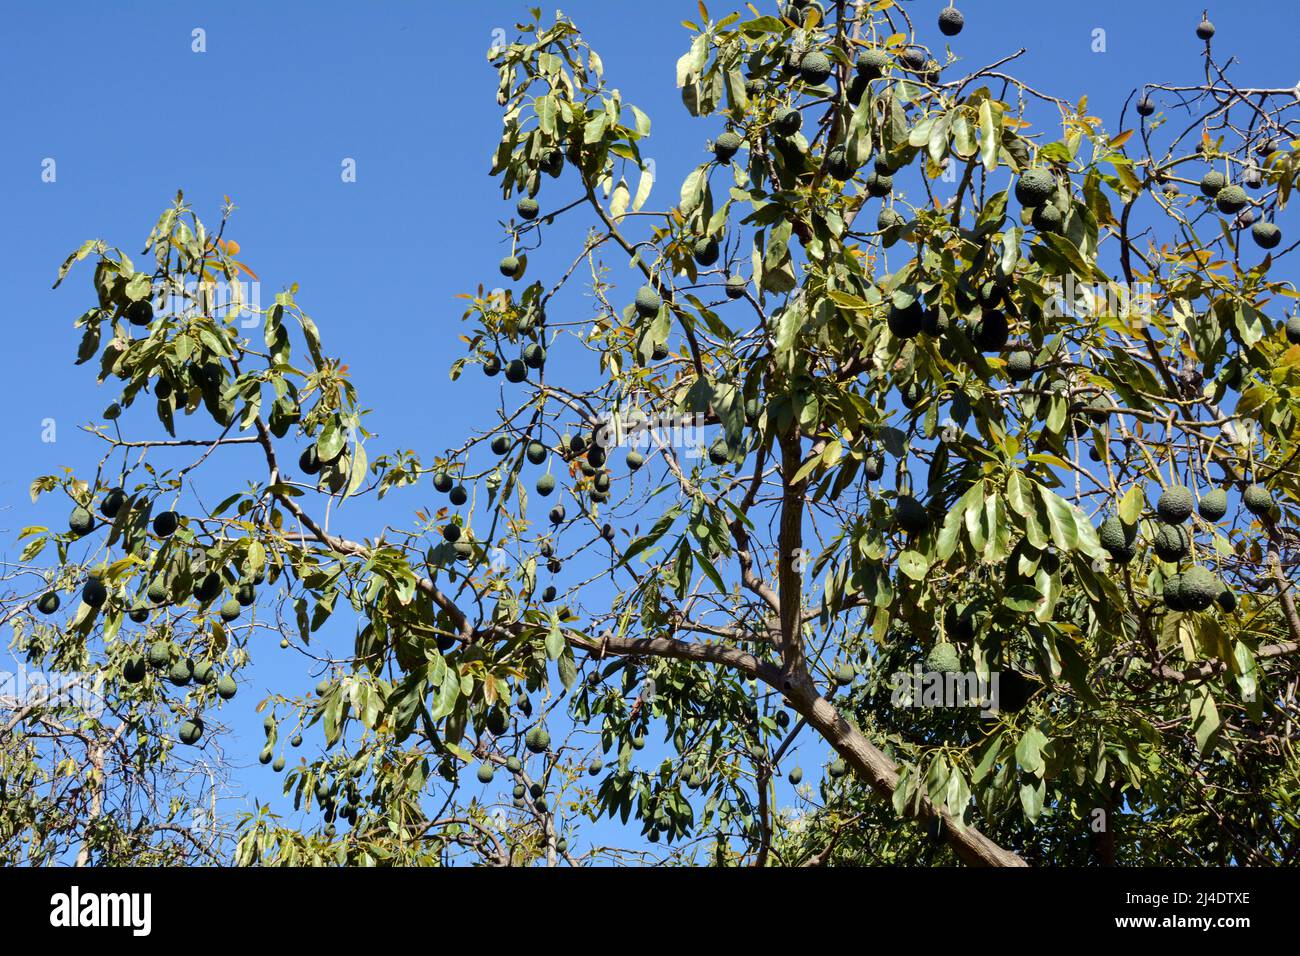 Avocats espagnols presque mûrs accrochés aux branches d'un arbre sur une ferme (finca) à Los Realejos, sur l'île de Tenerife, les îles Canaries, Espagne Banque D'Images